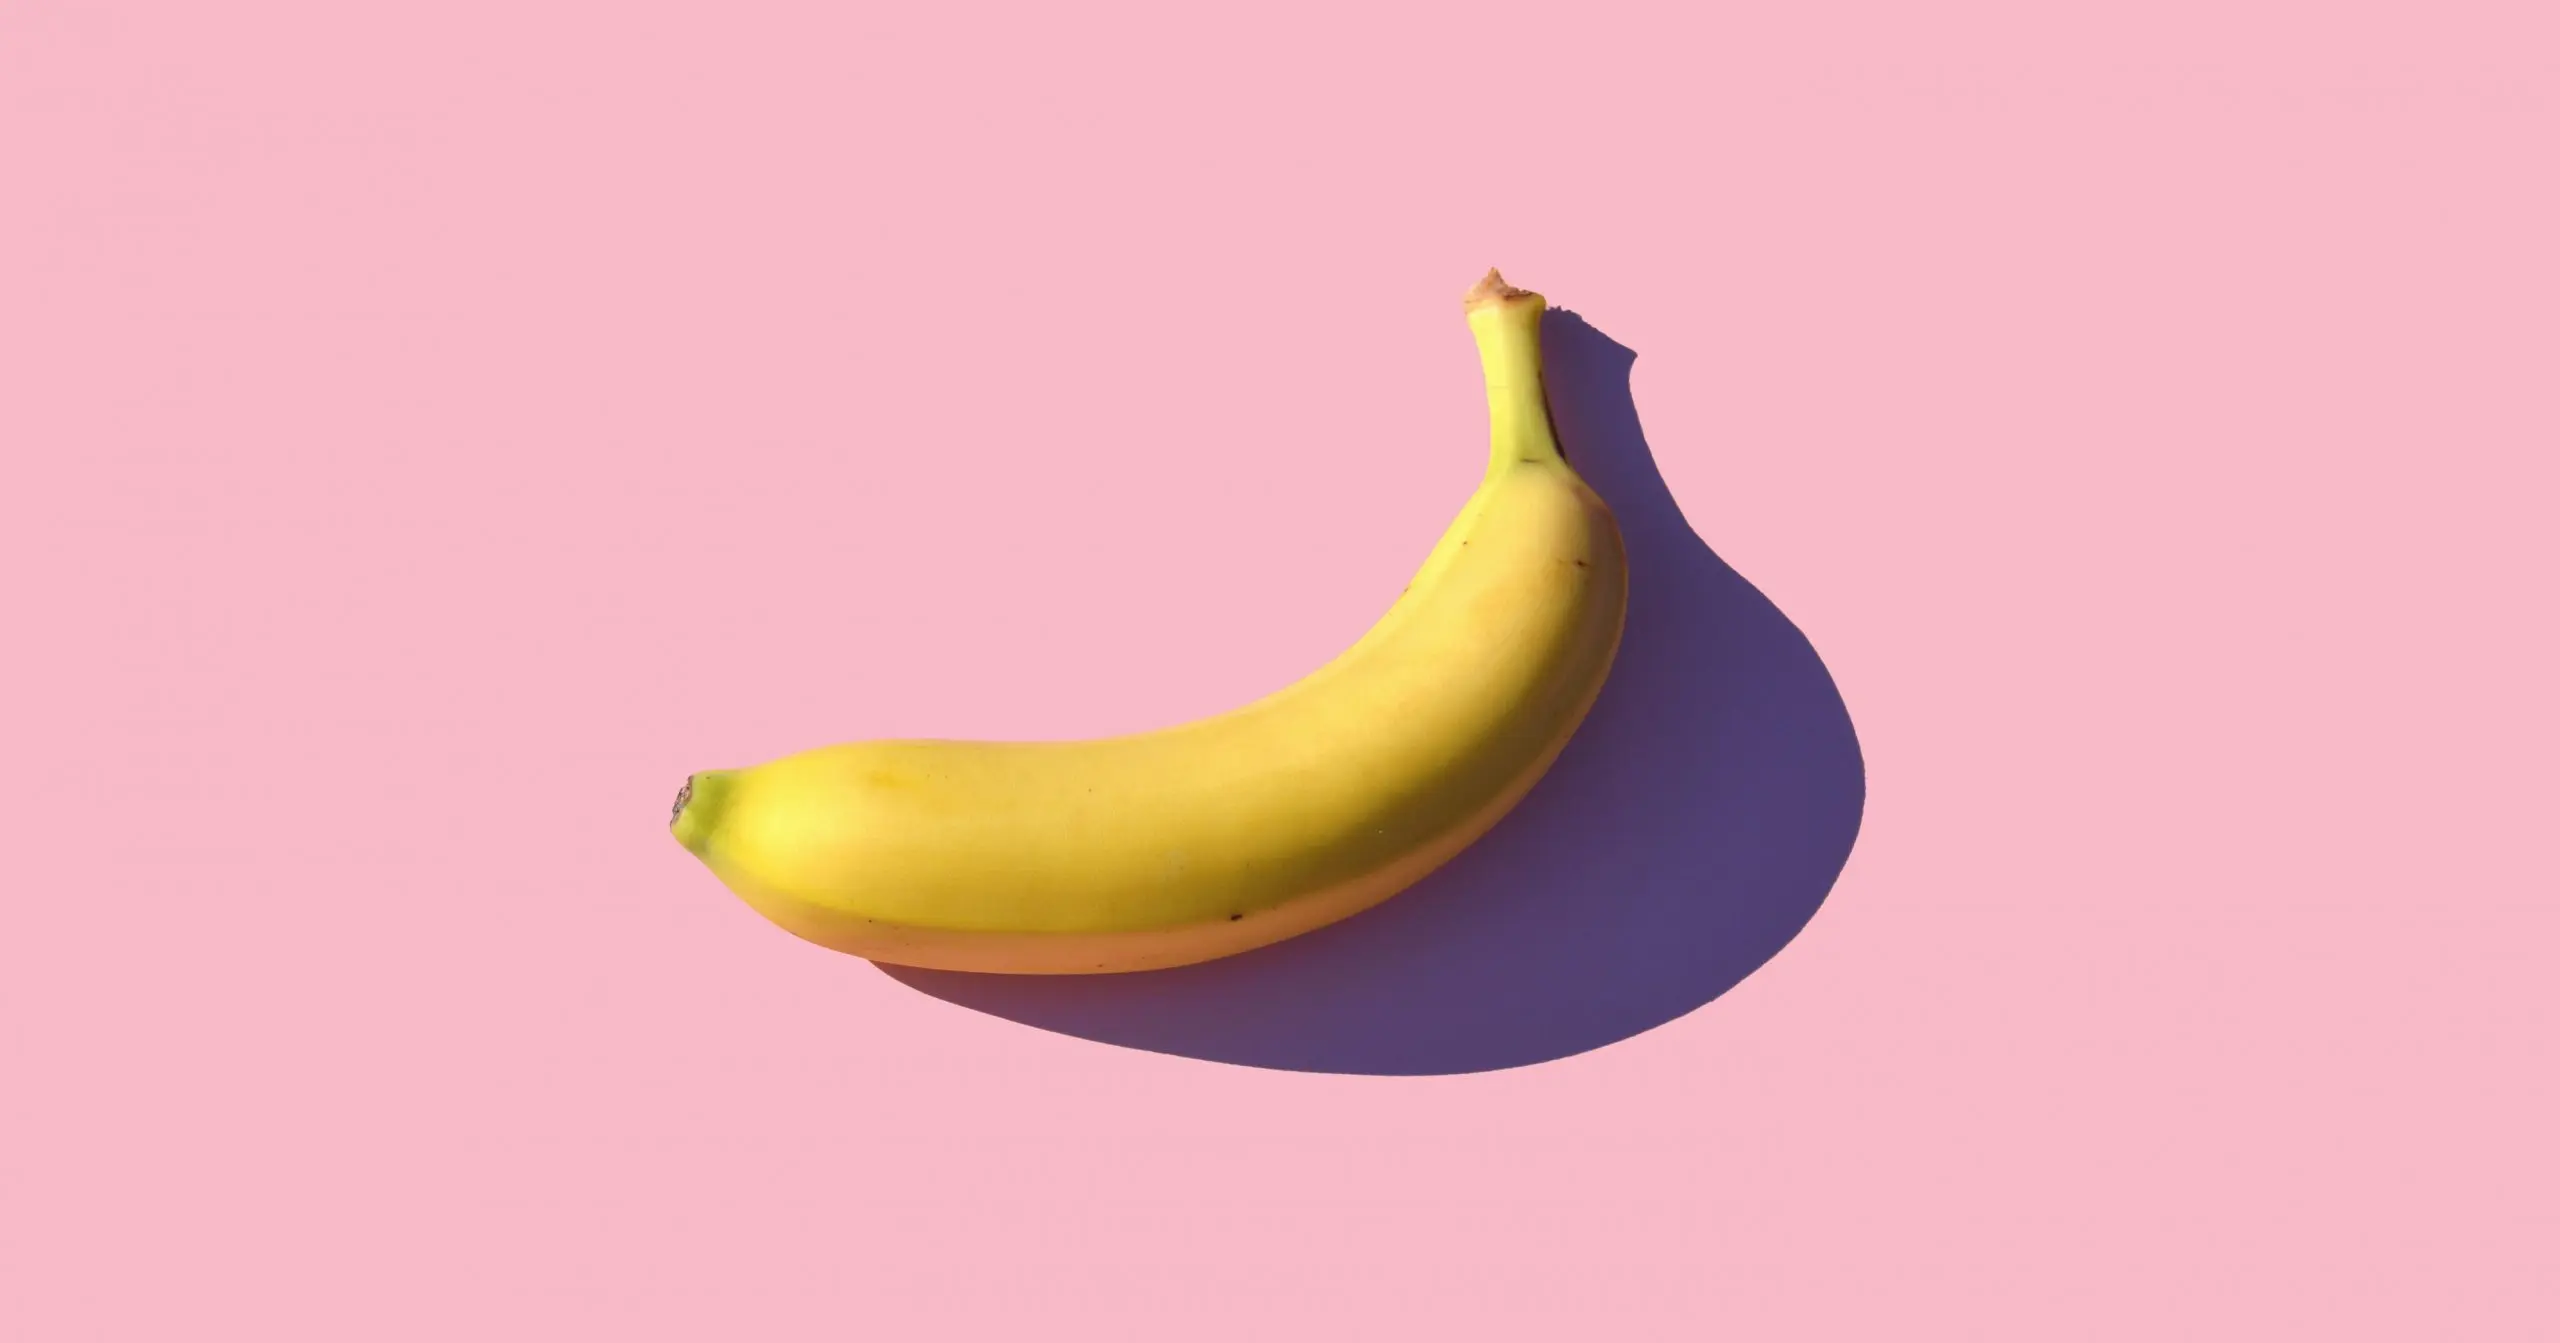 Les Britanniques jettent 1,4 million de bananes comestibles par jour